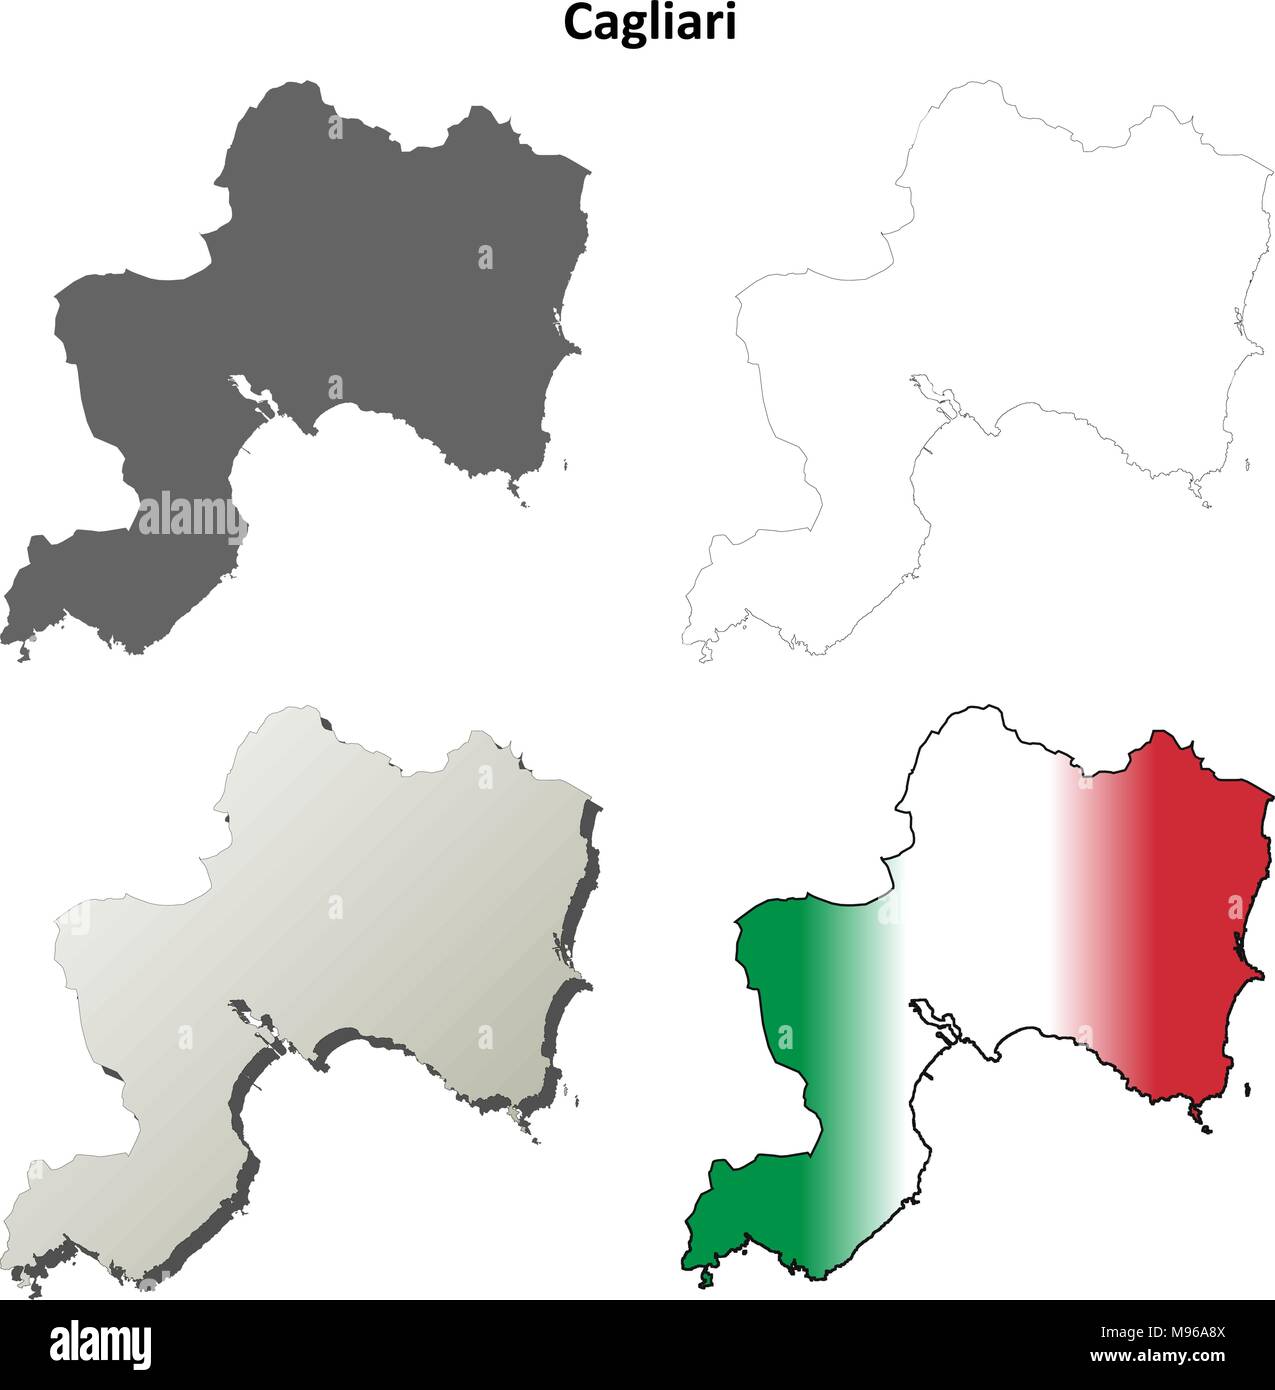 Cagliari blank aperçu détaillé de l'ensemble de cartes Illustration de Vecteur